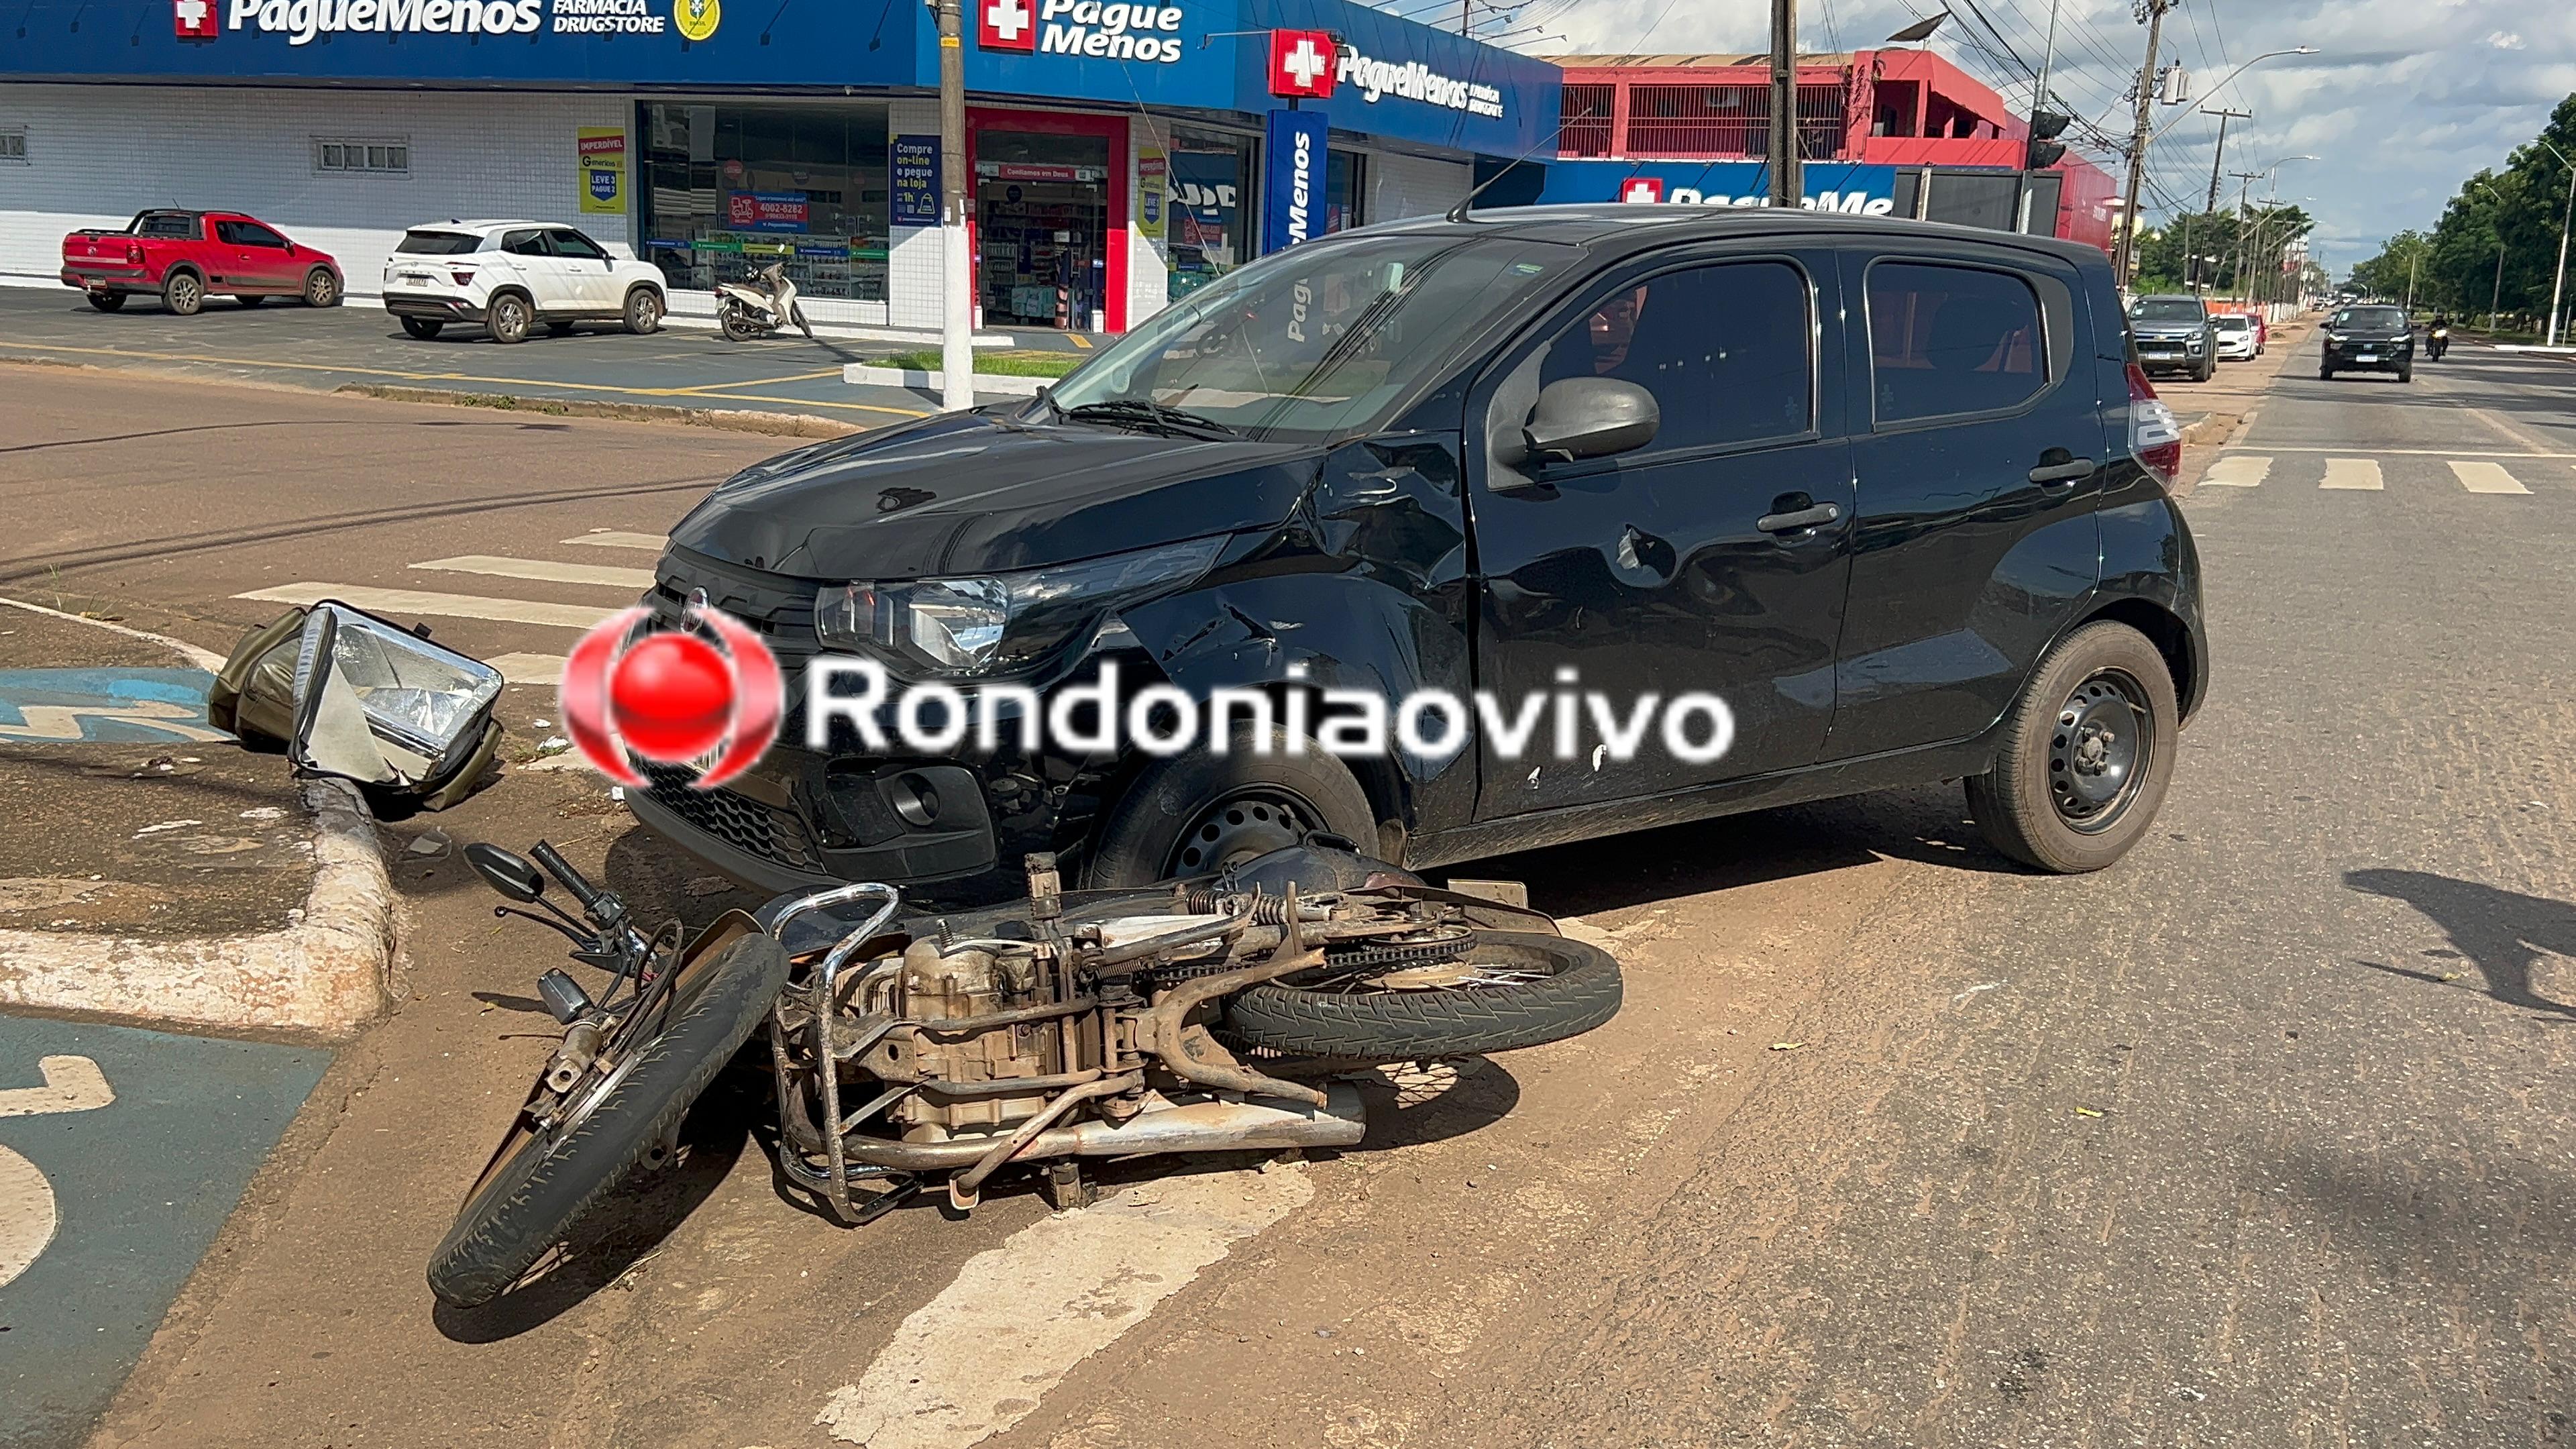 URGENTE: Motoboy fica ferido em acidente na Jorge Teixeira